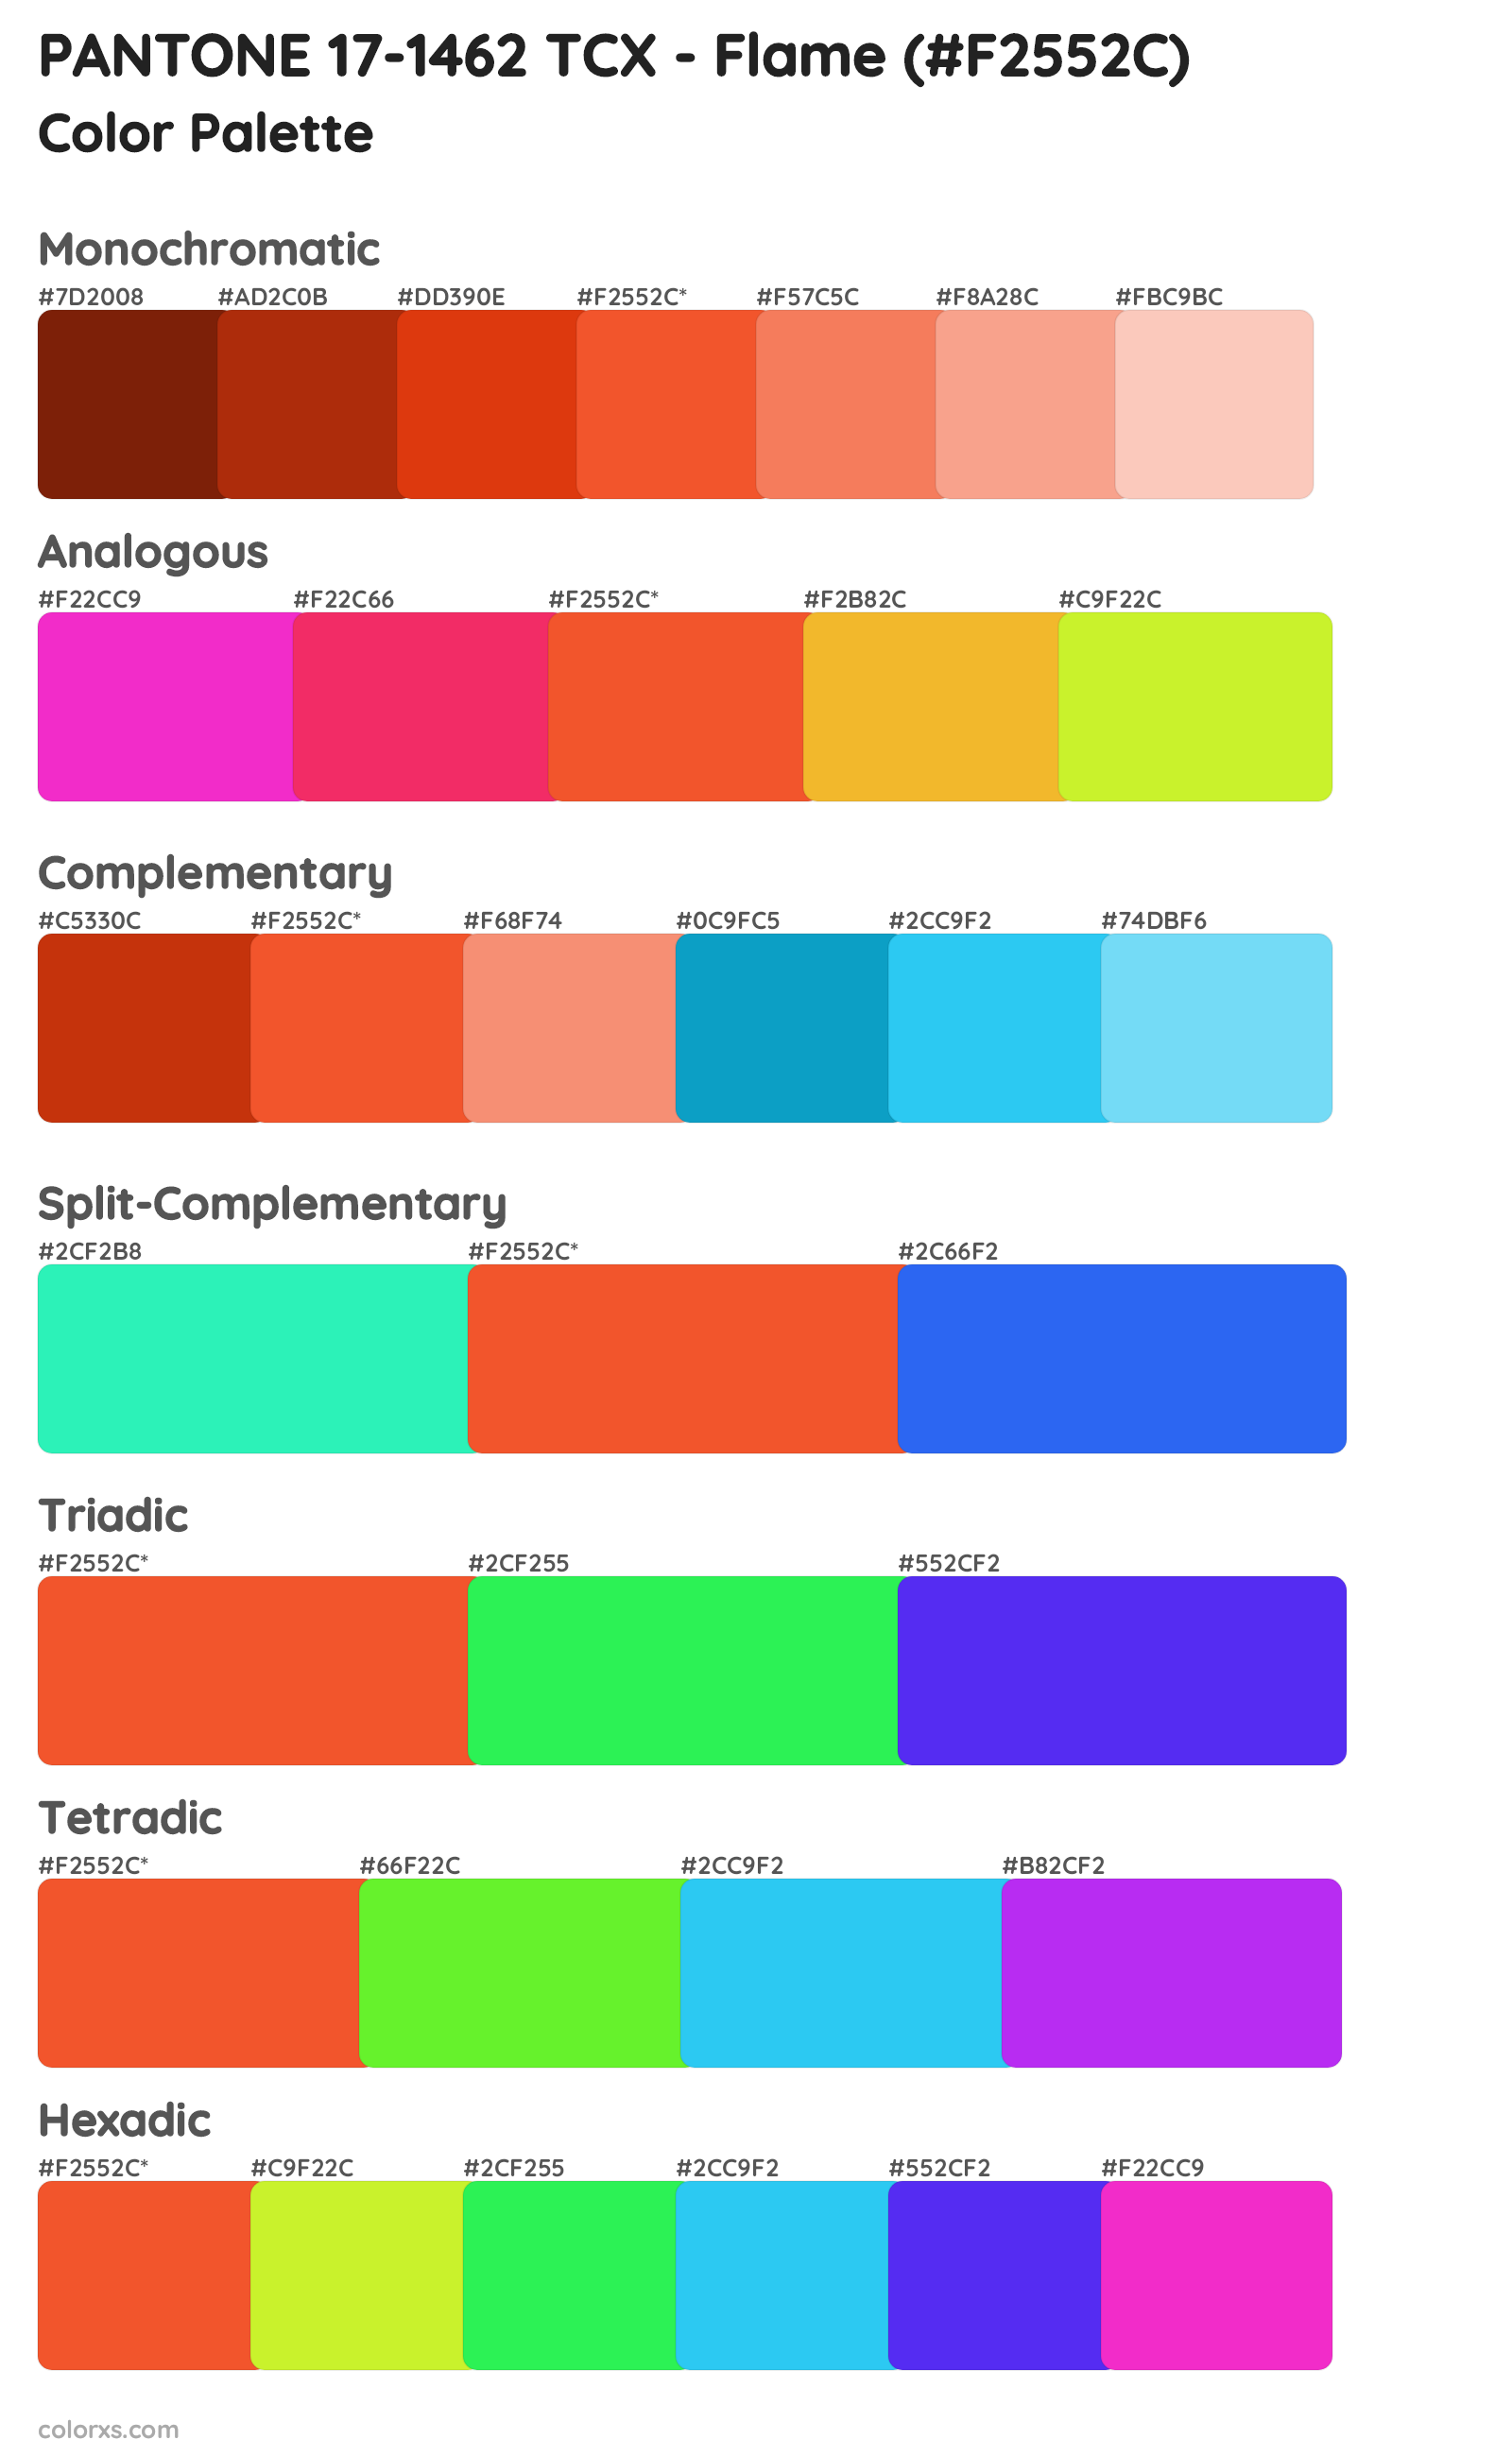 PANTONE 17-1462 TCX - Flame Color Scheme Palettes